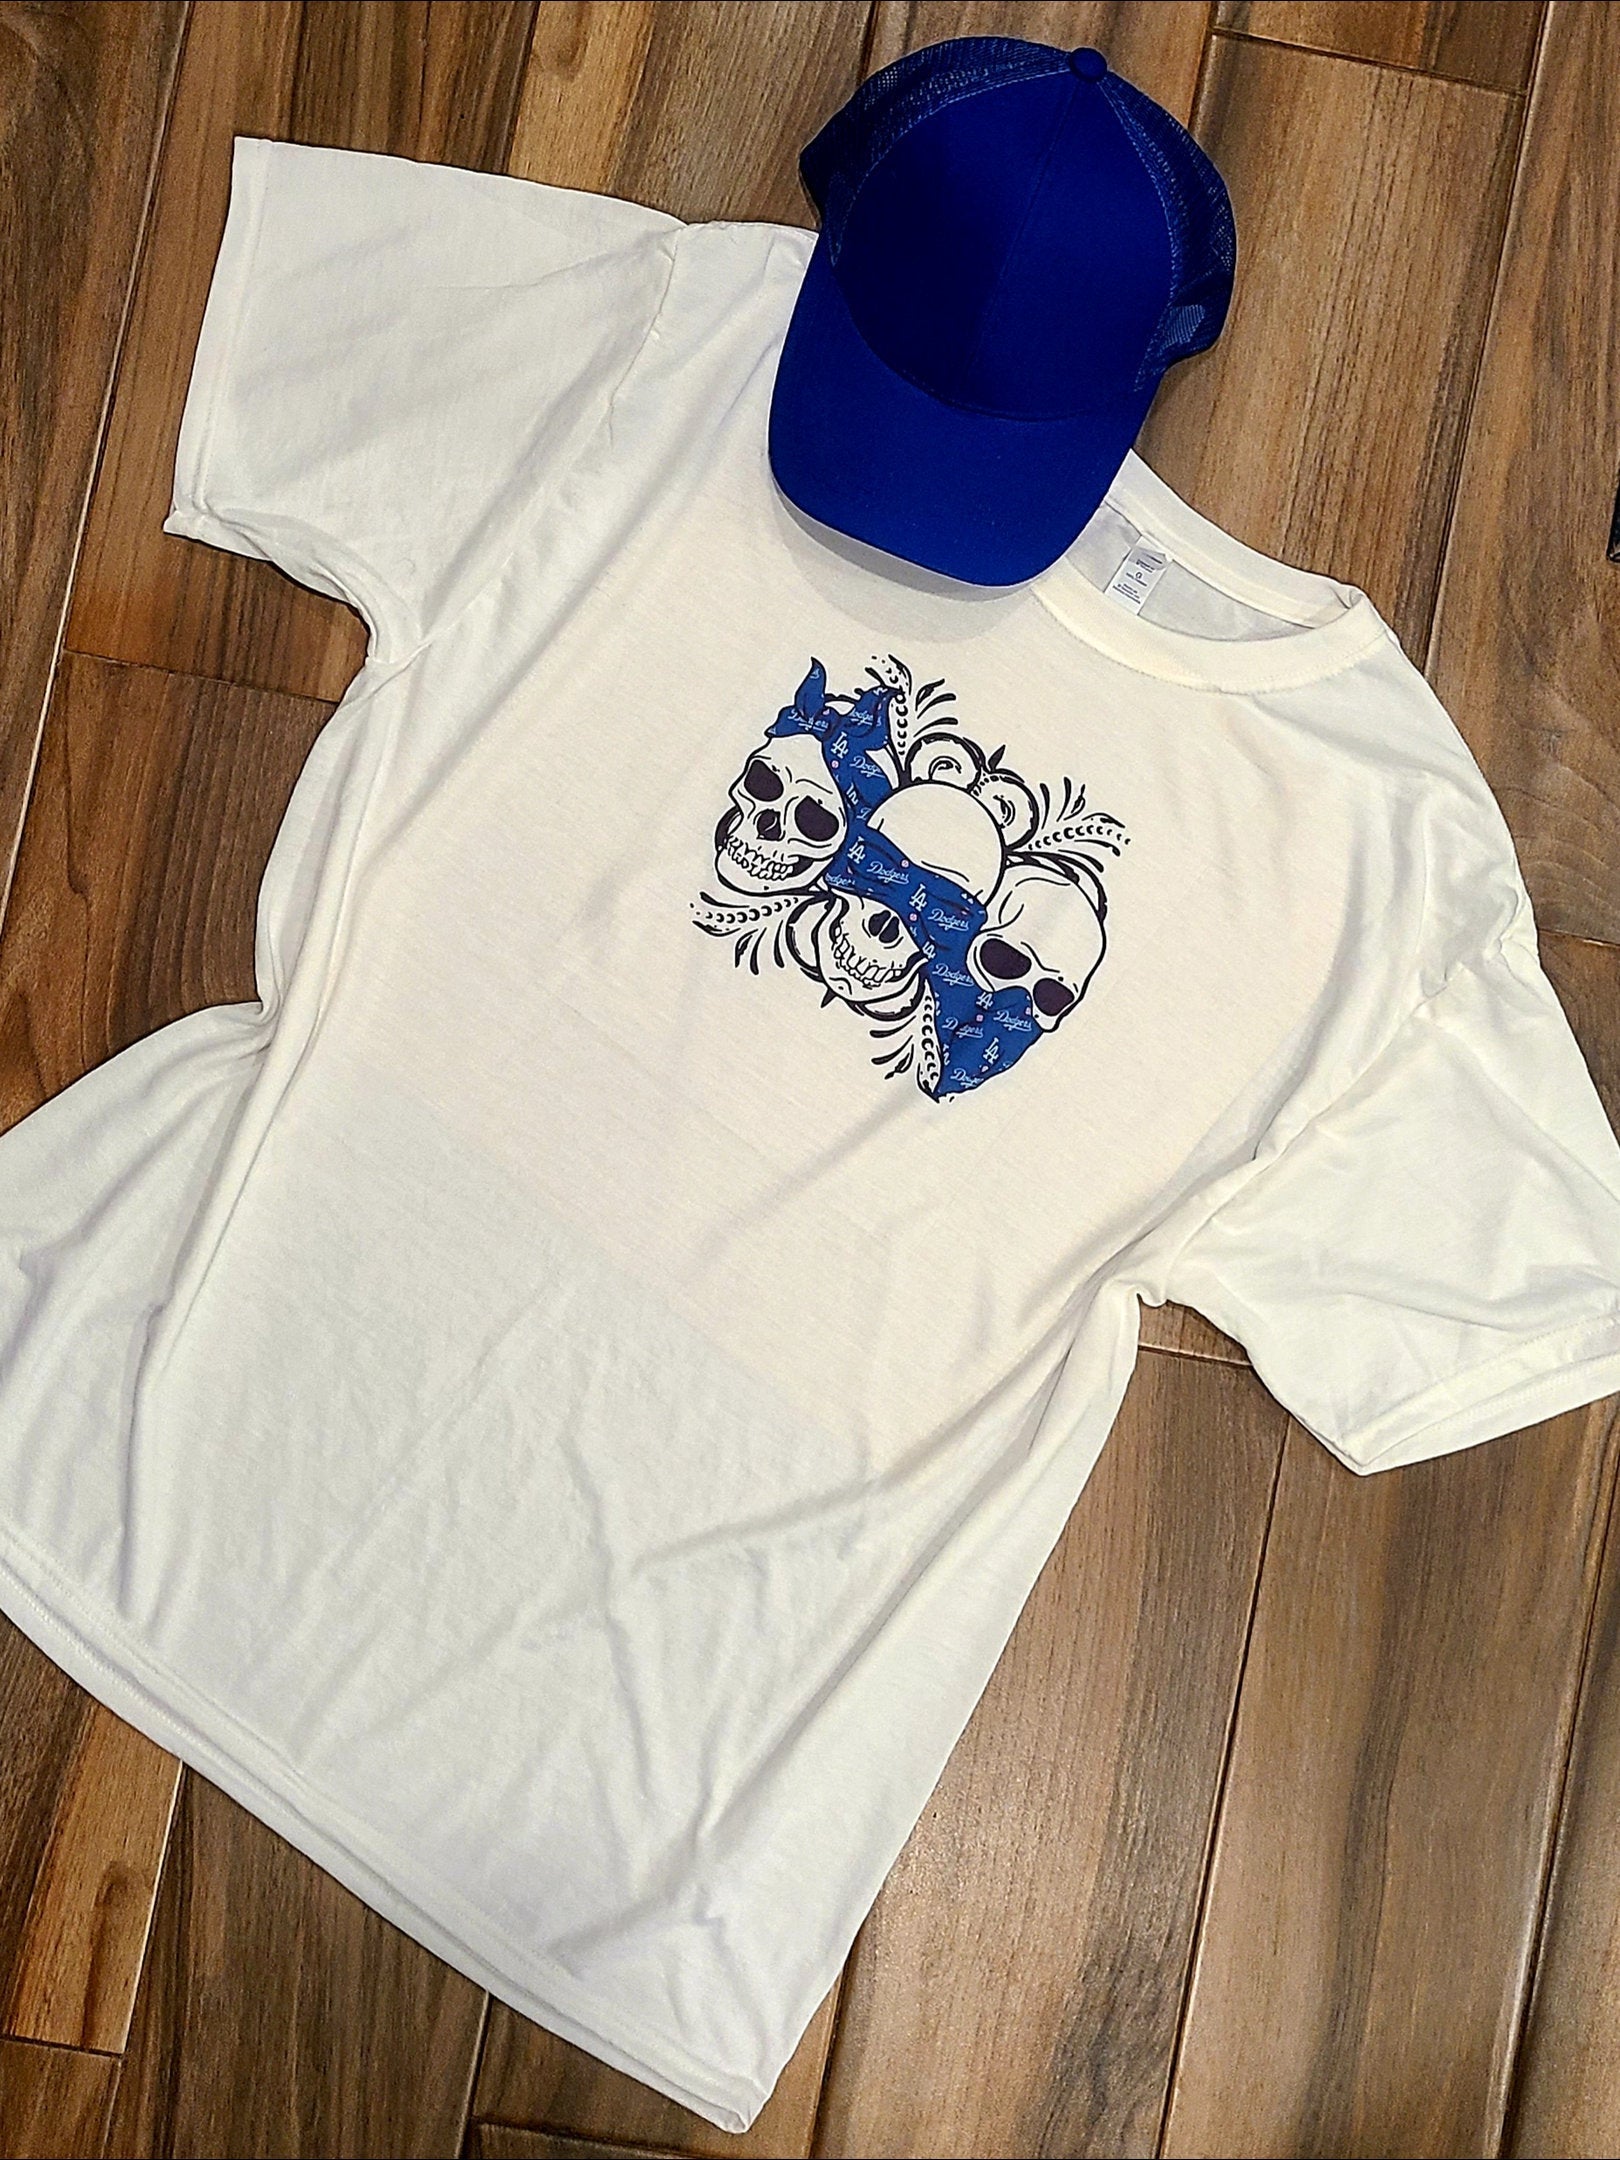 Dodgers Inspired Skull Shirt - White